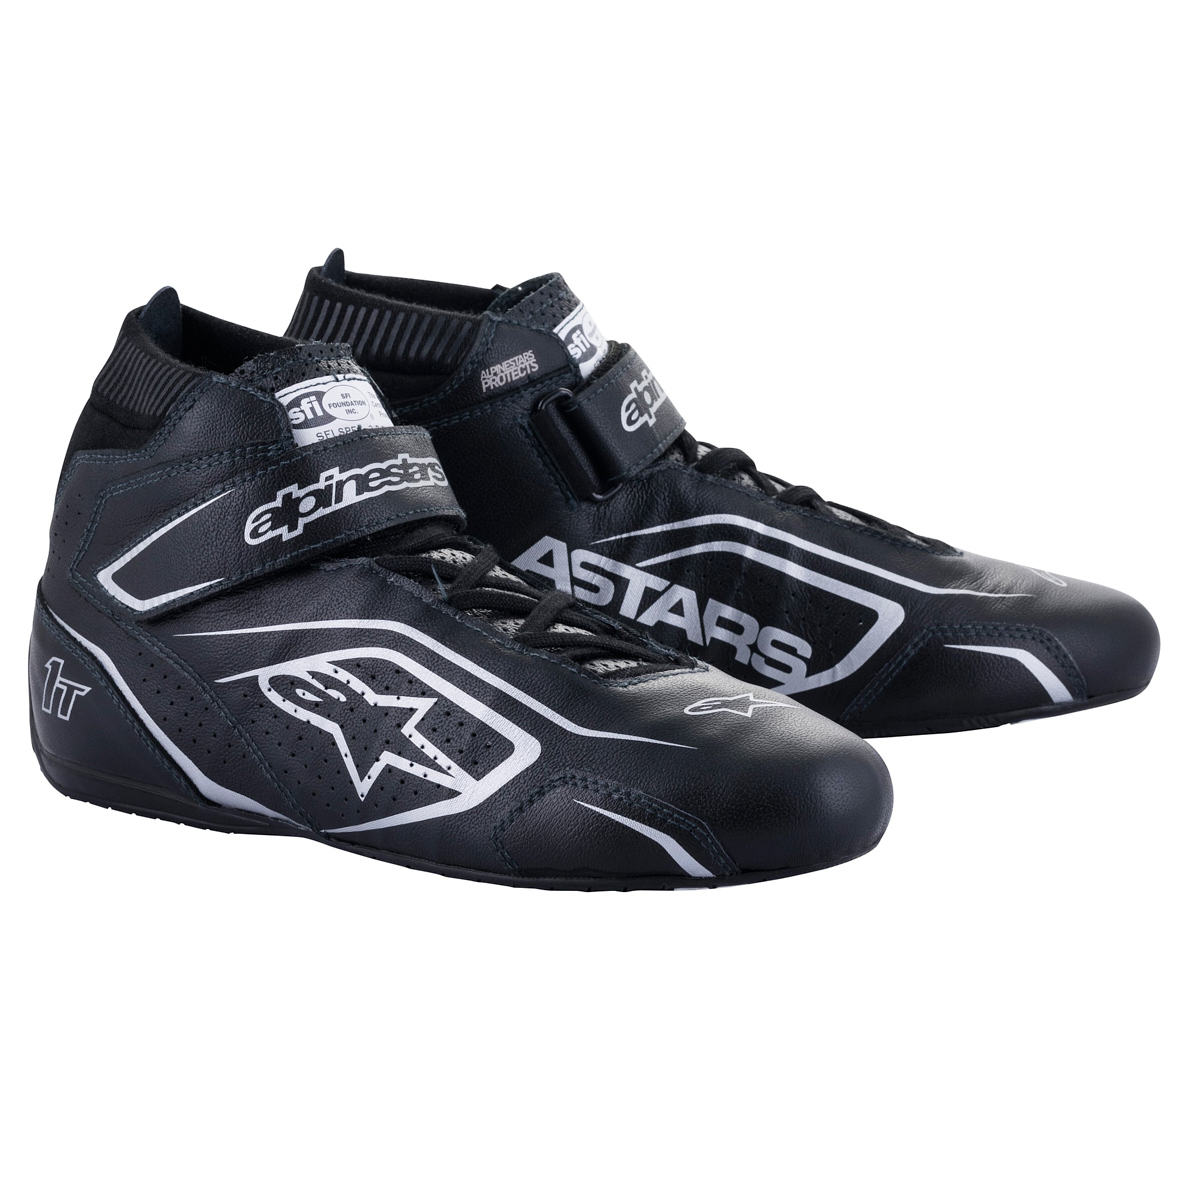 Alpinestars 2710122-119-7.5 - Shoe Tech-1T V3 Black / Silver Size 7.5